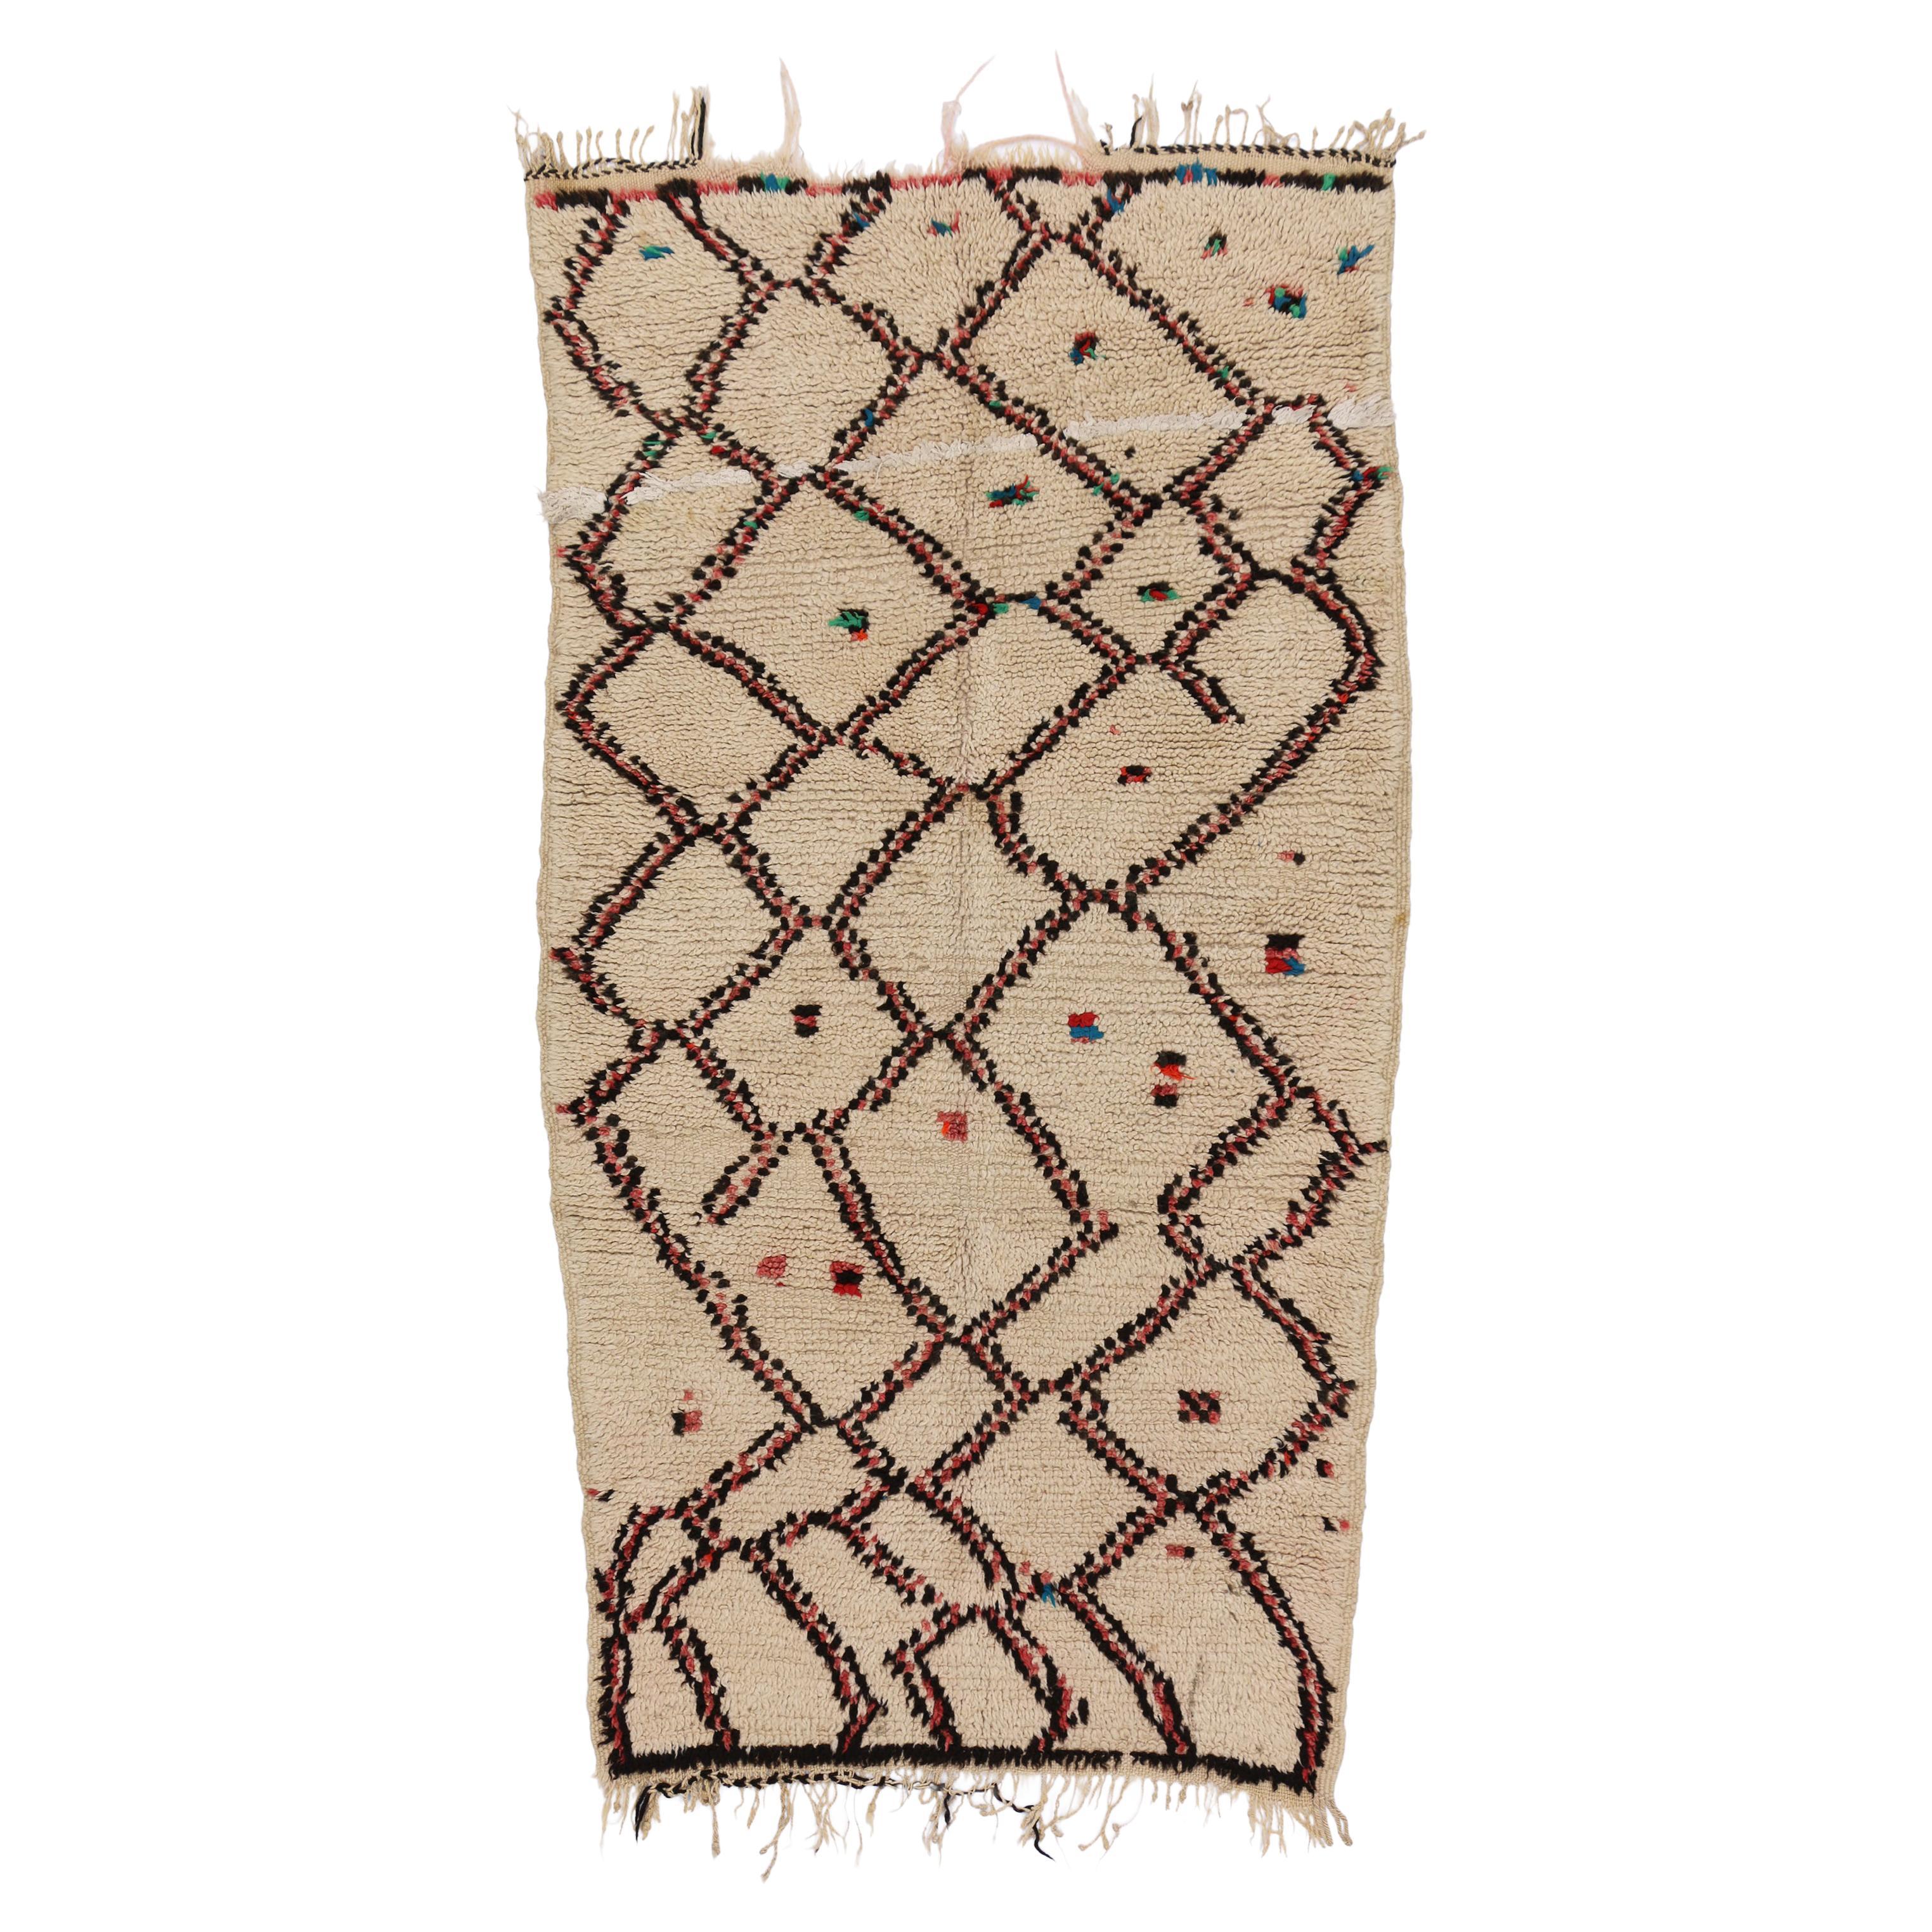 Vintage Berber Moroccan Azilal Rug, Ait Bou Ichaouen Talsint Carpet